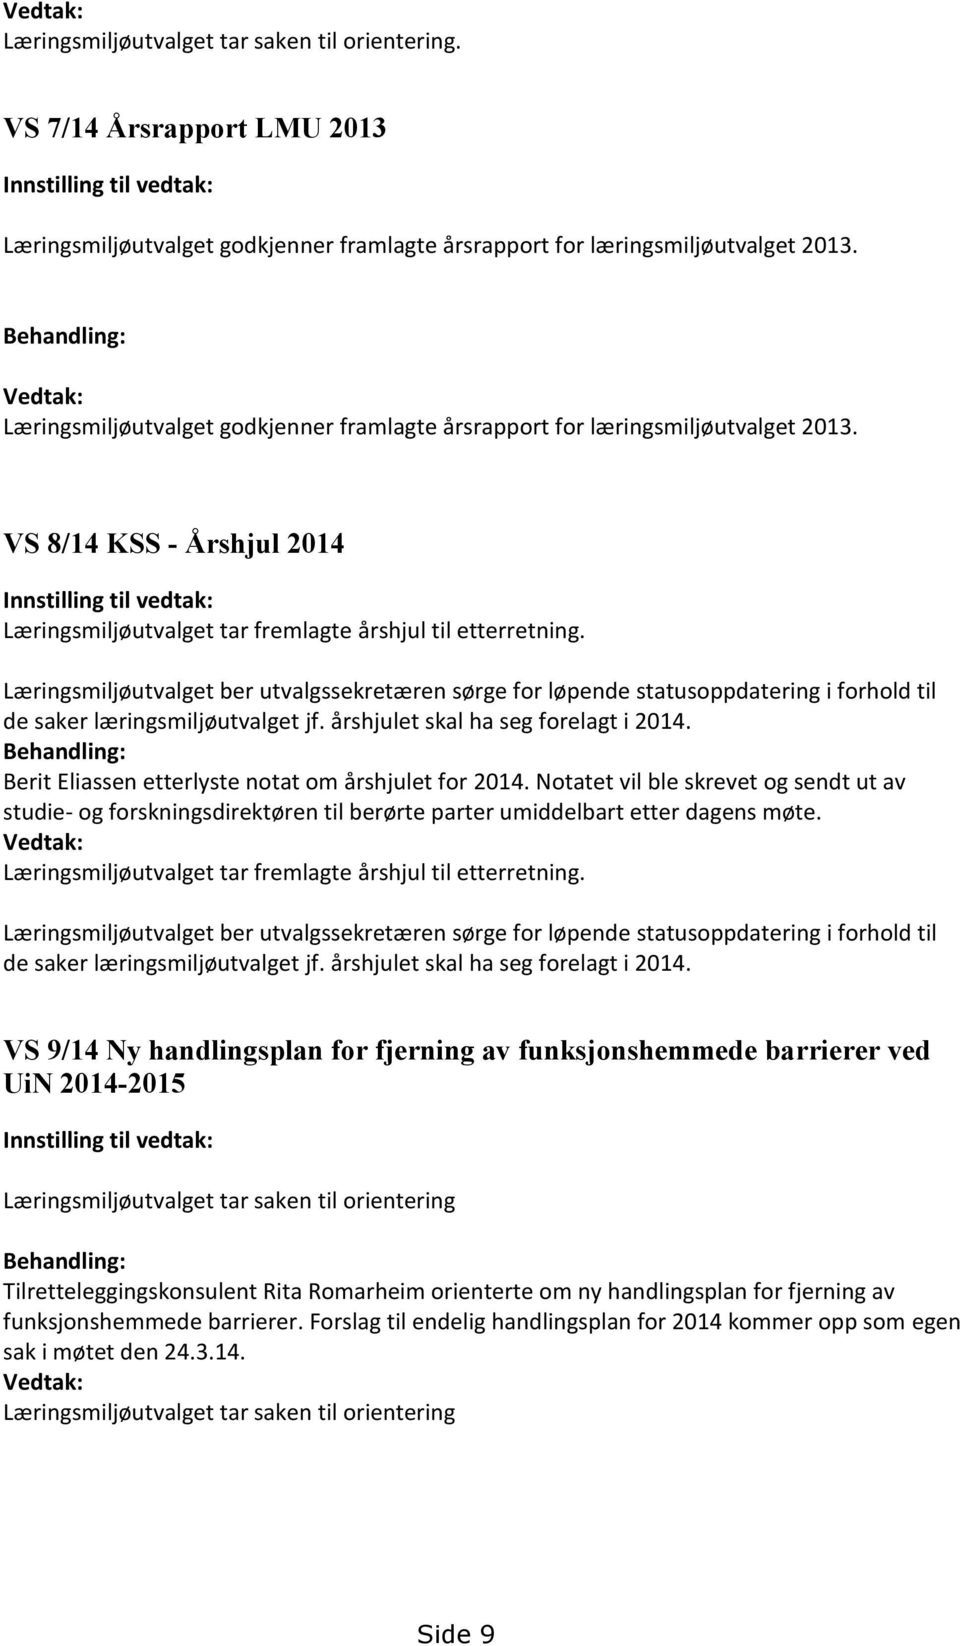 VS 8/14 KSS - Årshjul 2014 Innstilling til vedtak: Læringsmiljøutvalget tar fremlagte årshjul til etterretning.